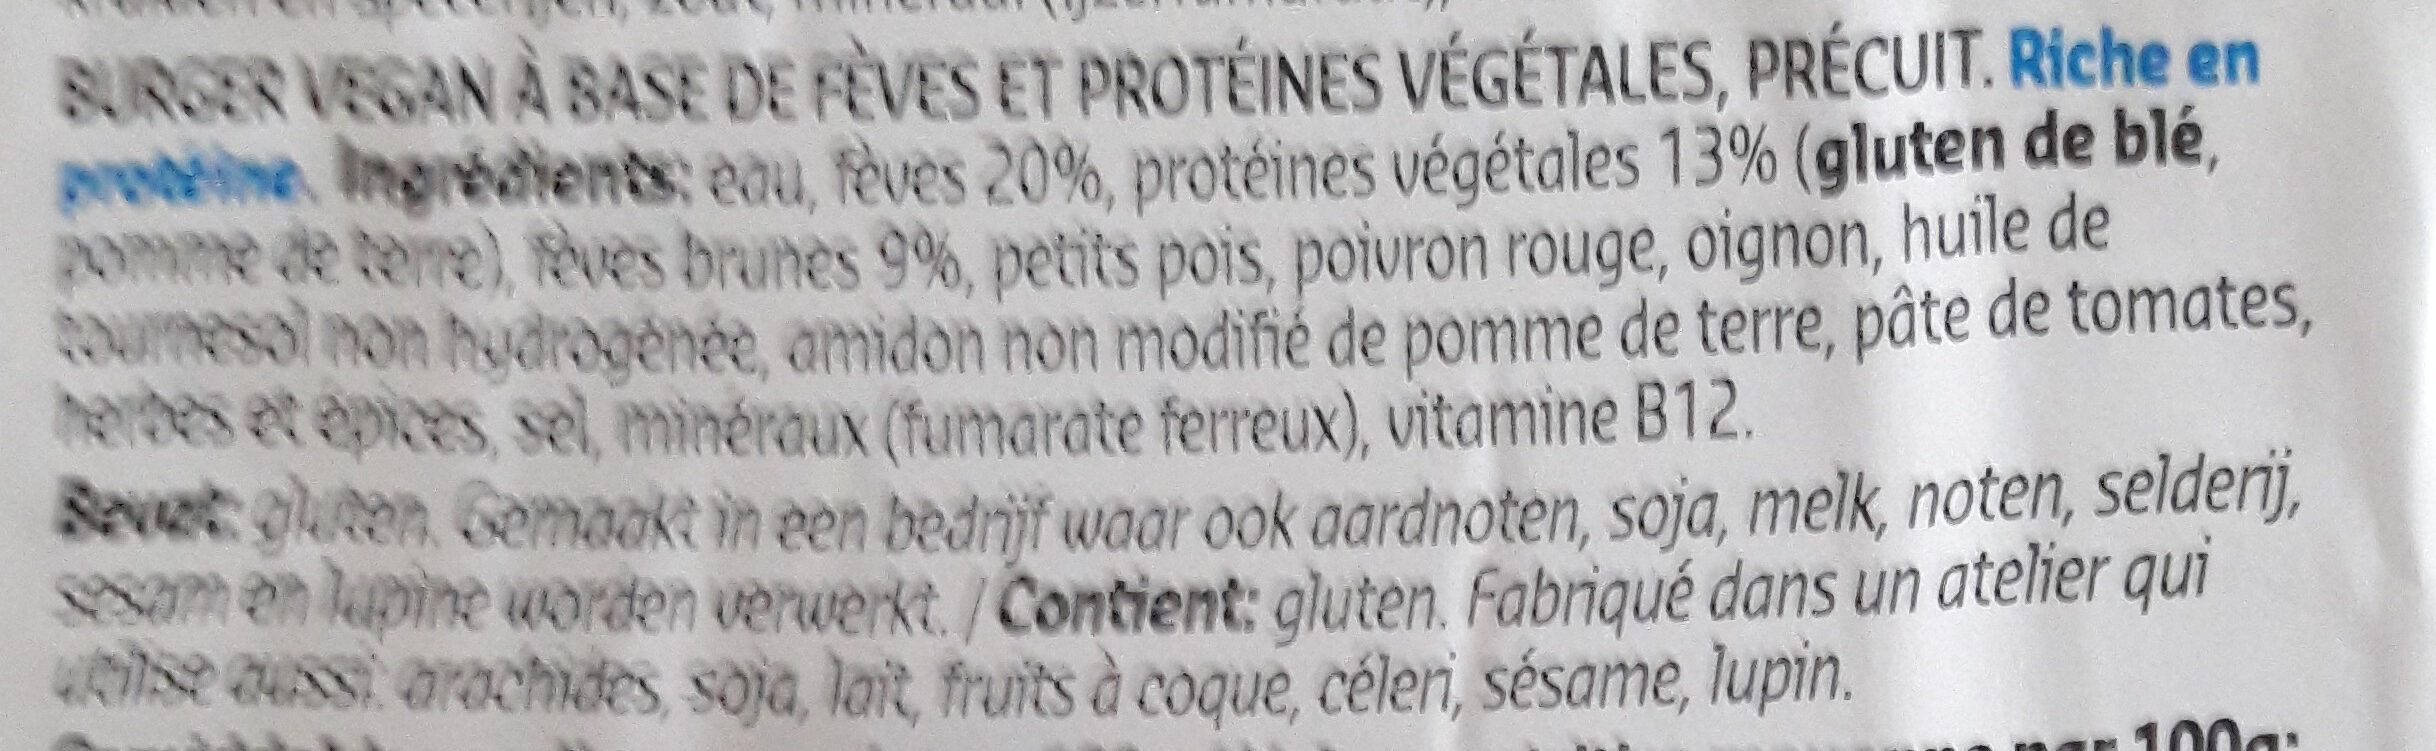 Burger de fèves - Ingrédients - fr